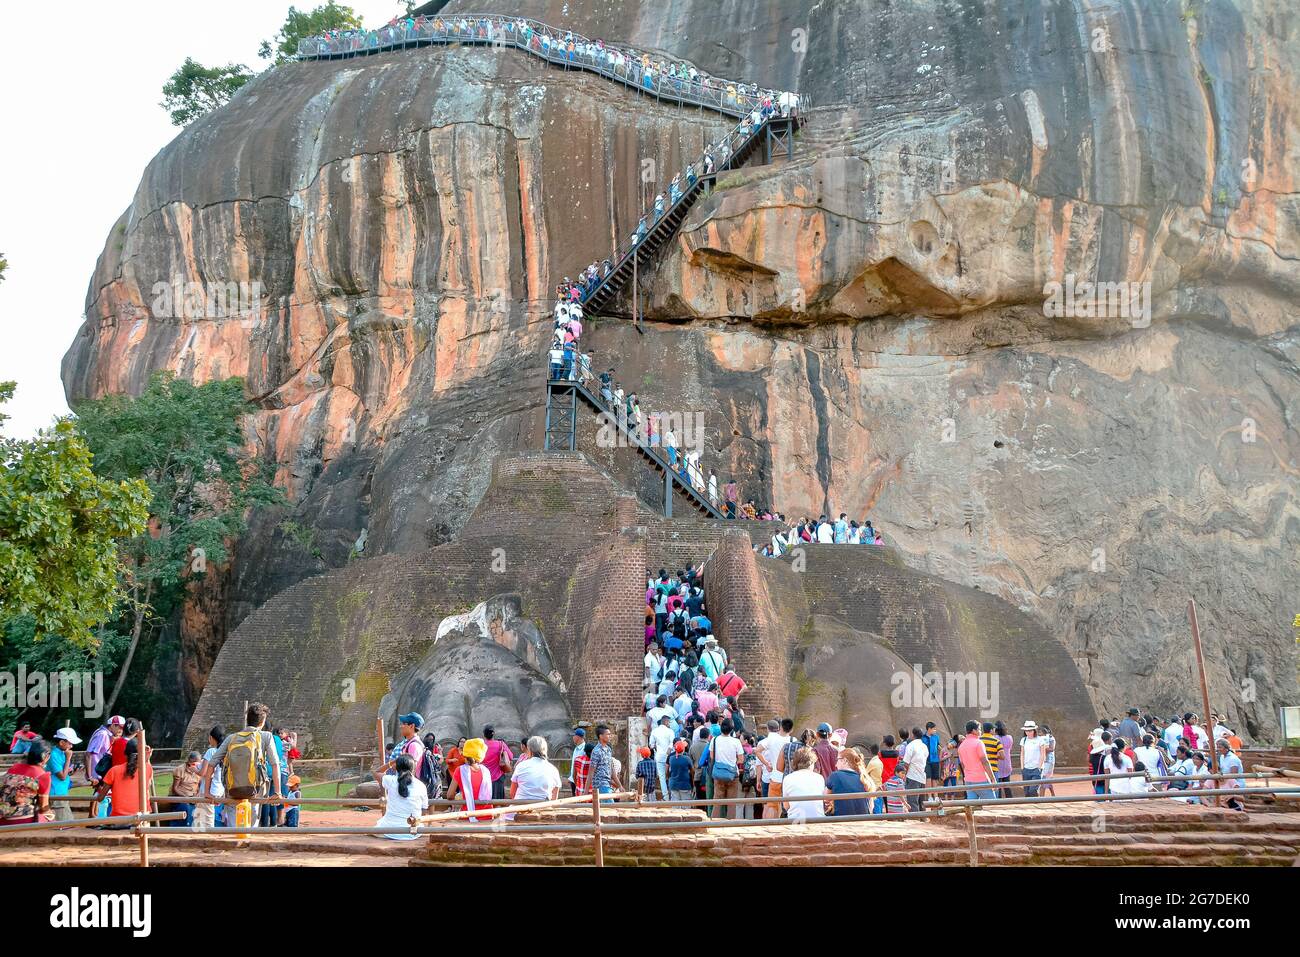 Felsenfestung Sigiriya 5. Tanzschrift ruinierte Burg, die die Unesco als Weltkulturerbe In Sri Lanka aufgeführt ist Stockfoto